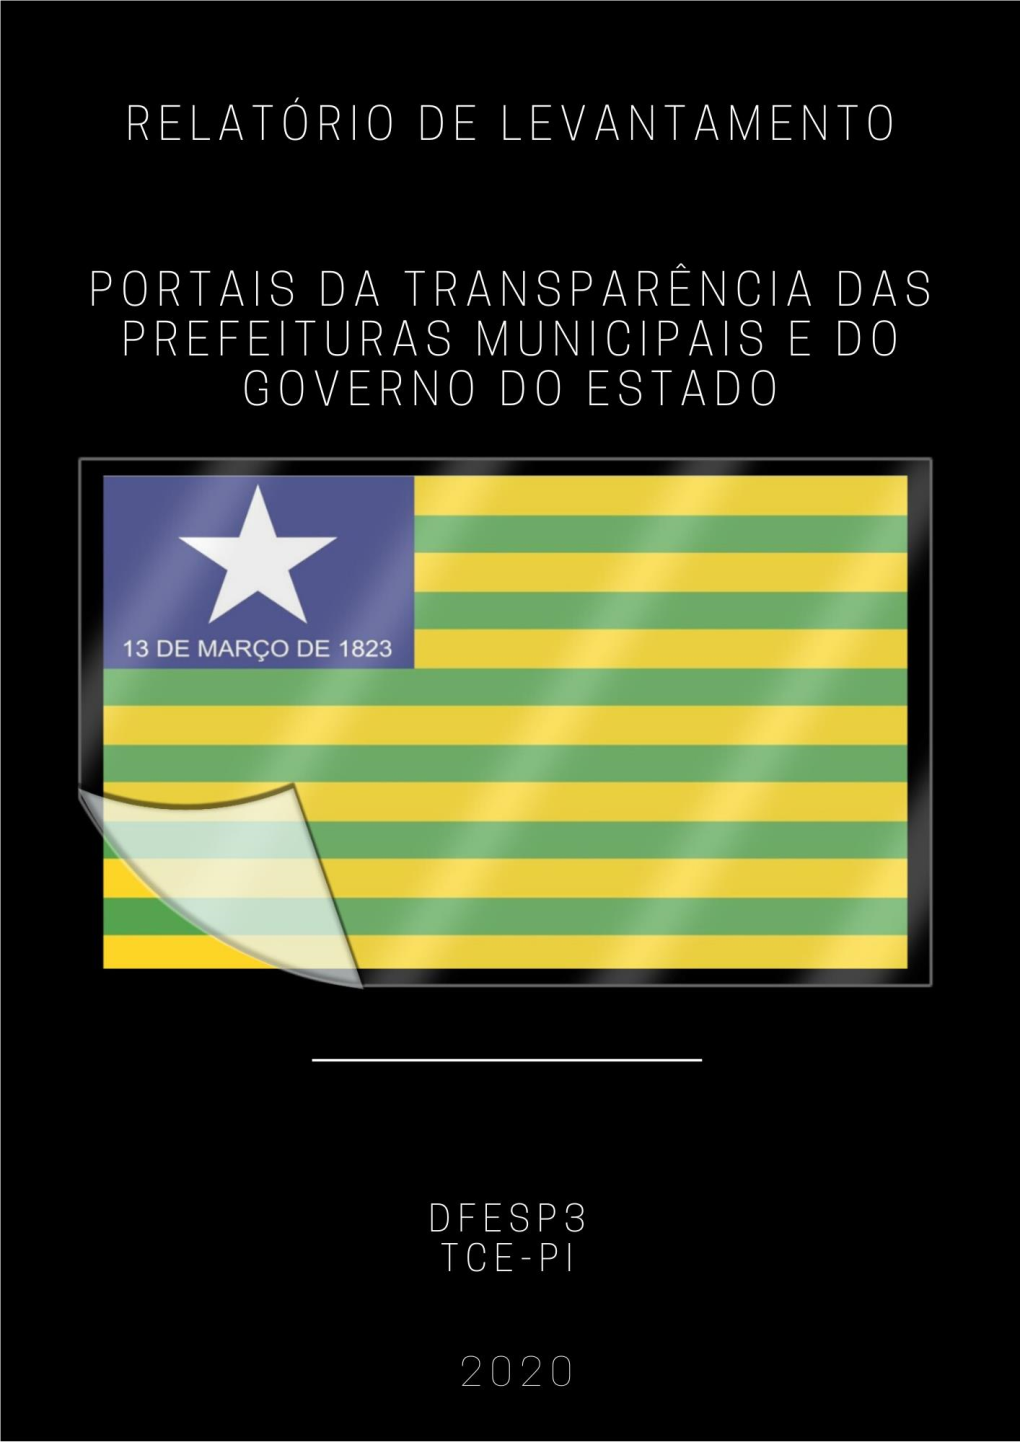 Relatório De Levantamento Dos Portais Da Transparência Das 224 Prefeituras Municipais E Do Governo Do Estado Do Piauí